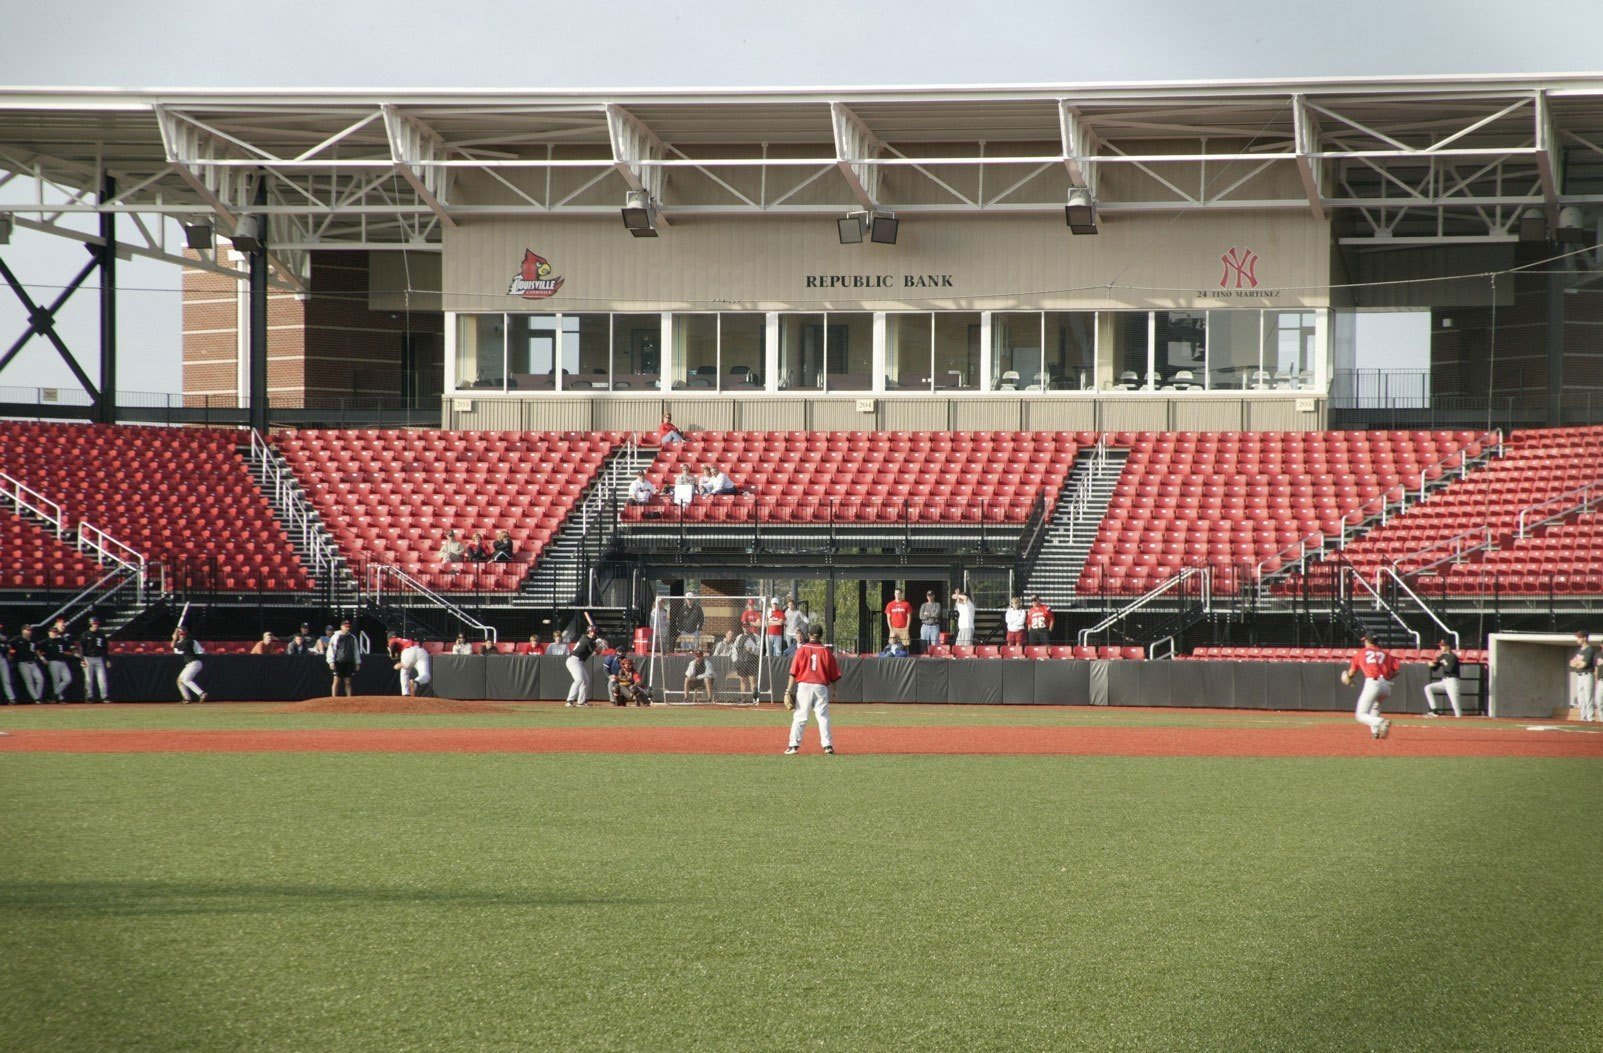 Jim Patterson Stadium - Facilities - University of Louisville Athletics